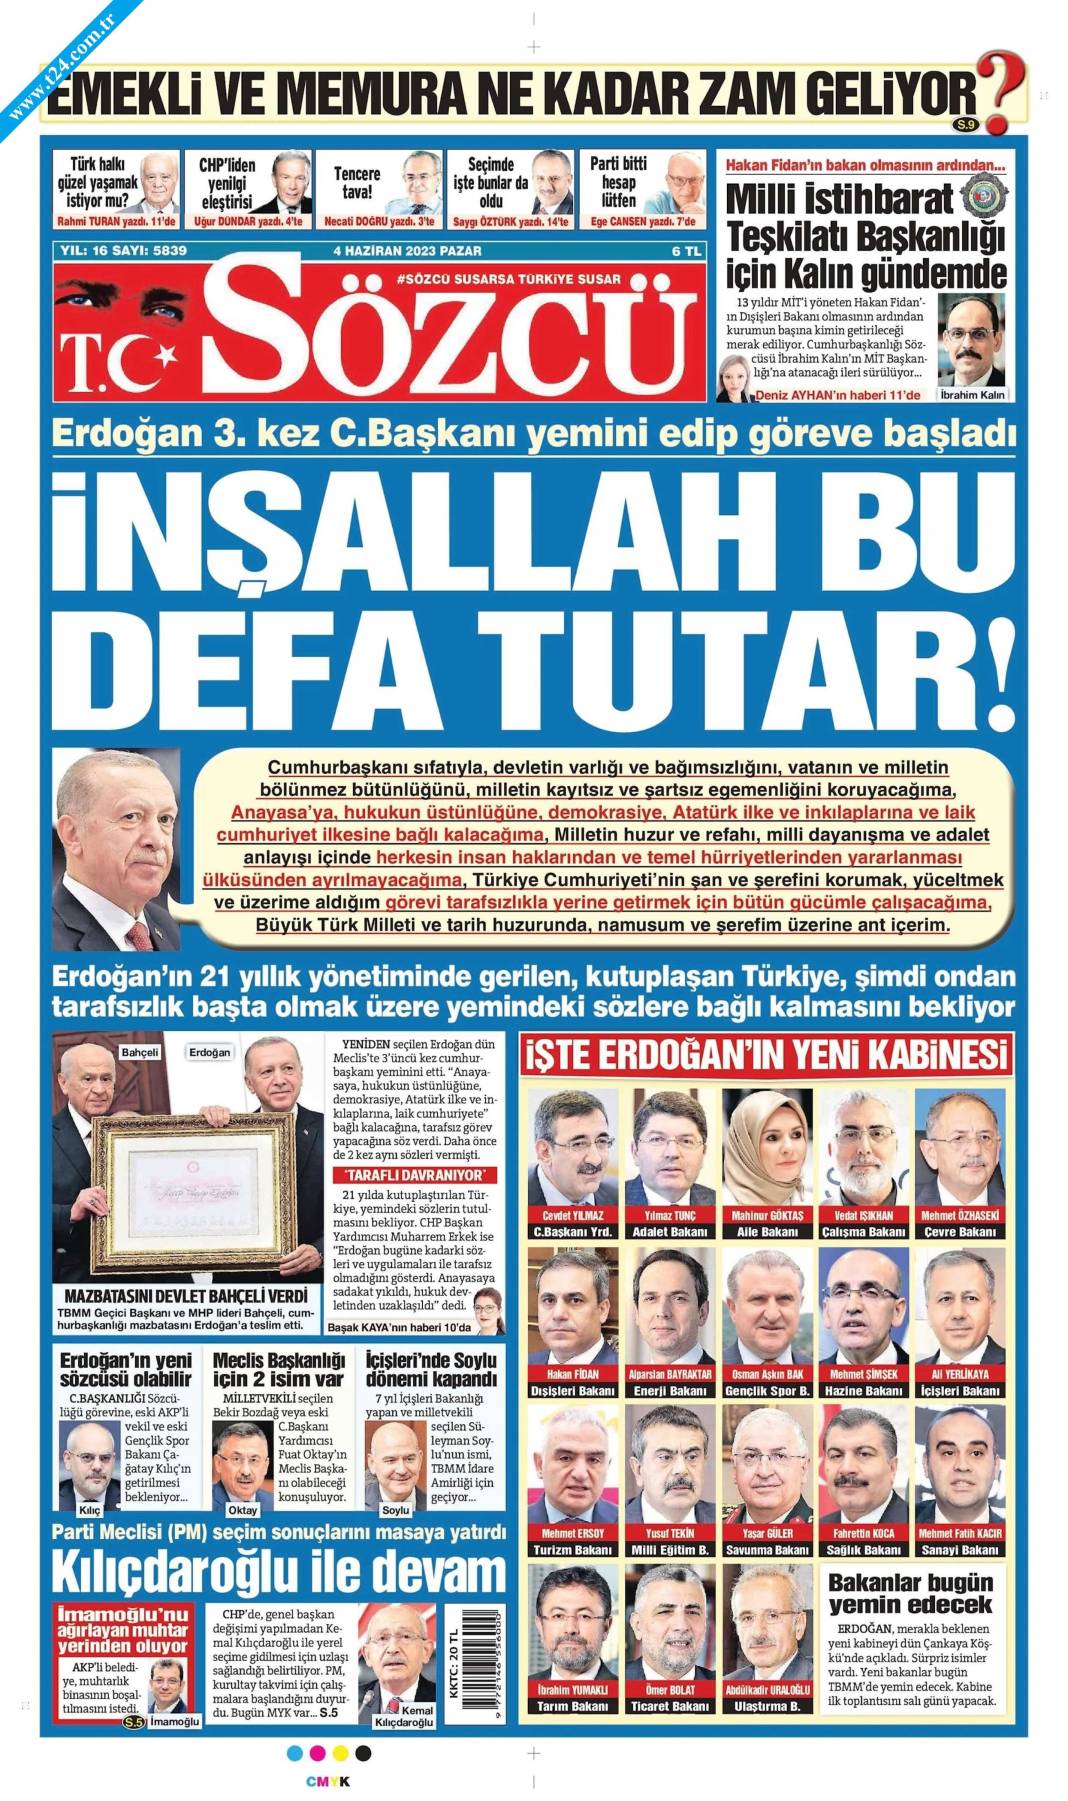 Gazeteler, Erdoğan’ın açıkladığı yeni kabine listesini manşetlerine nasıl taşıdı? İşte günün manşetleri 17